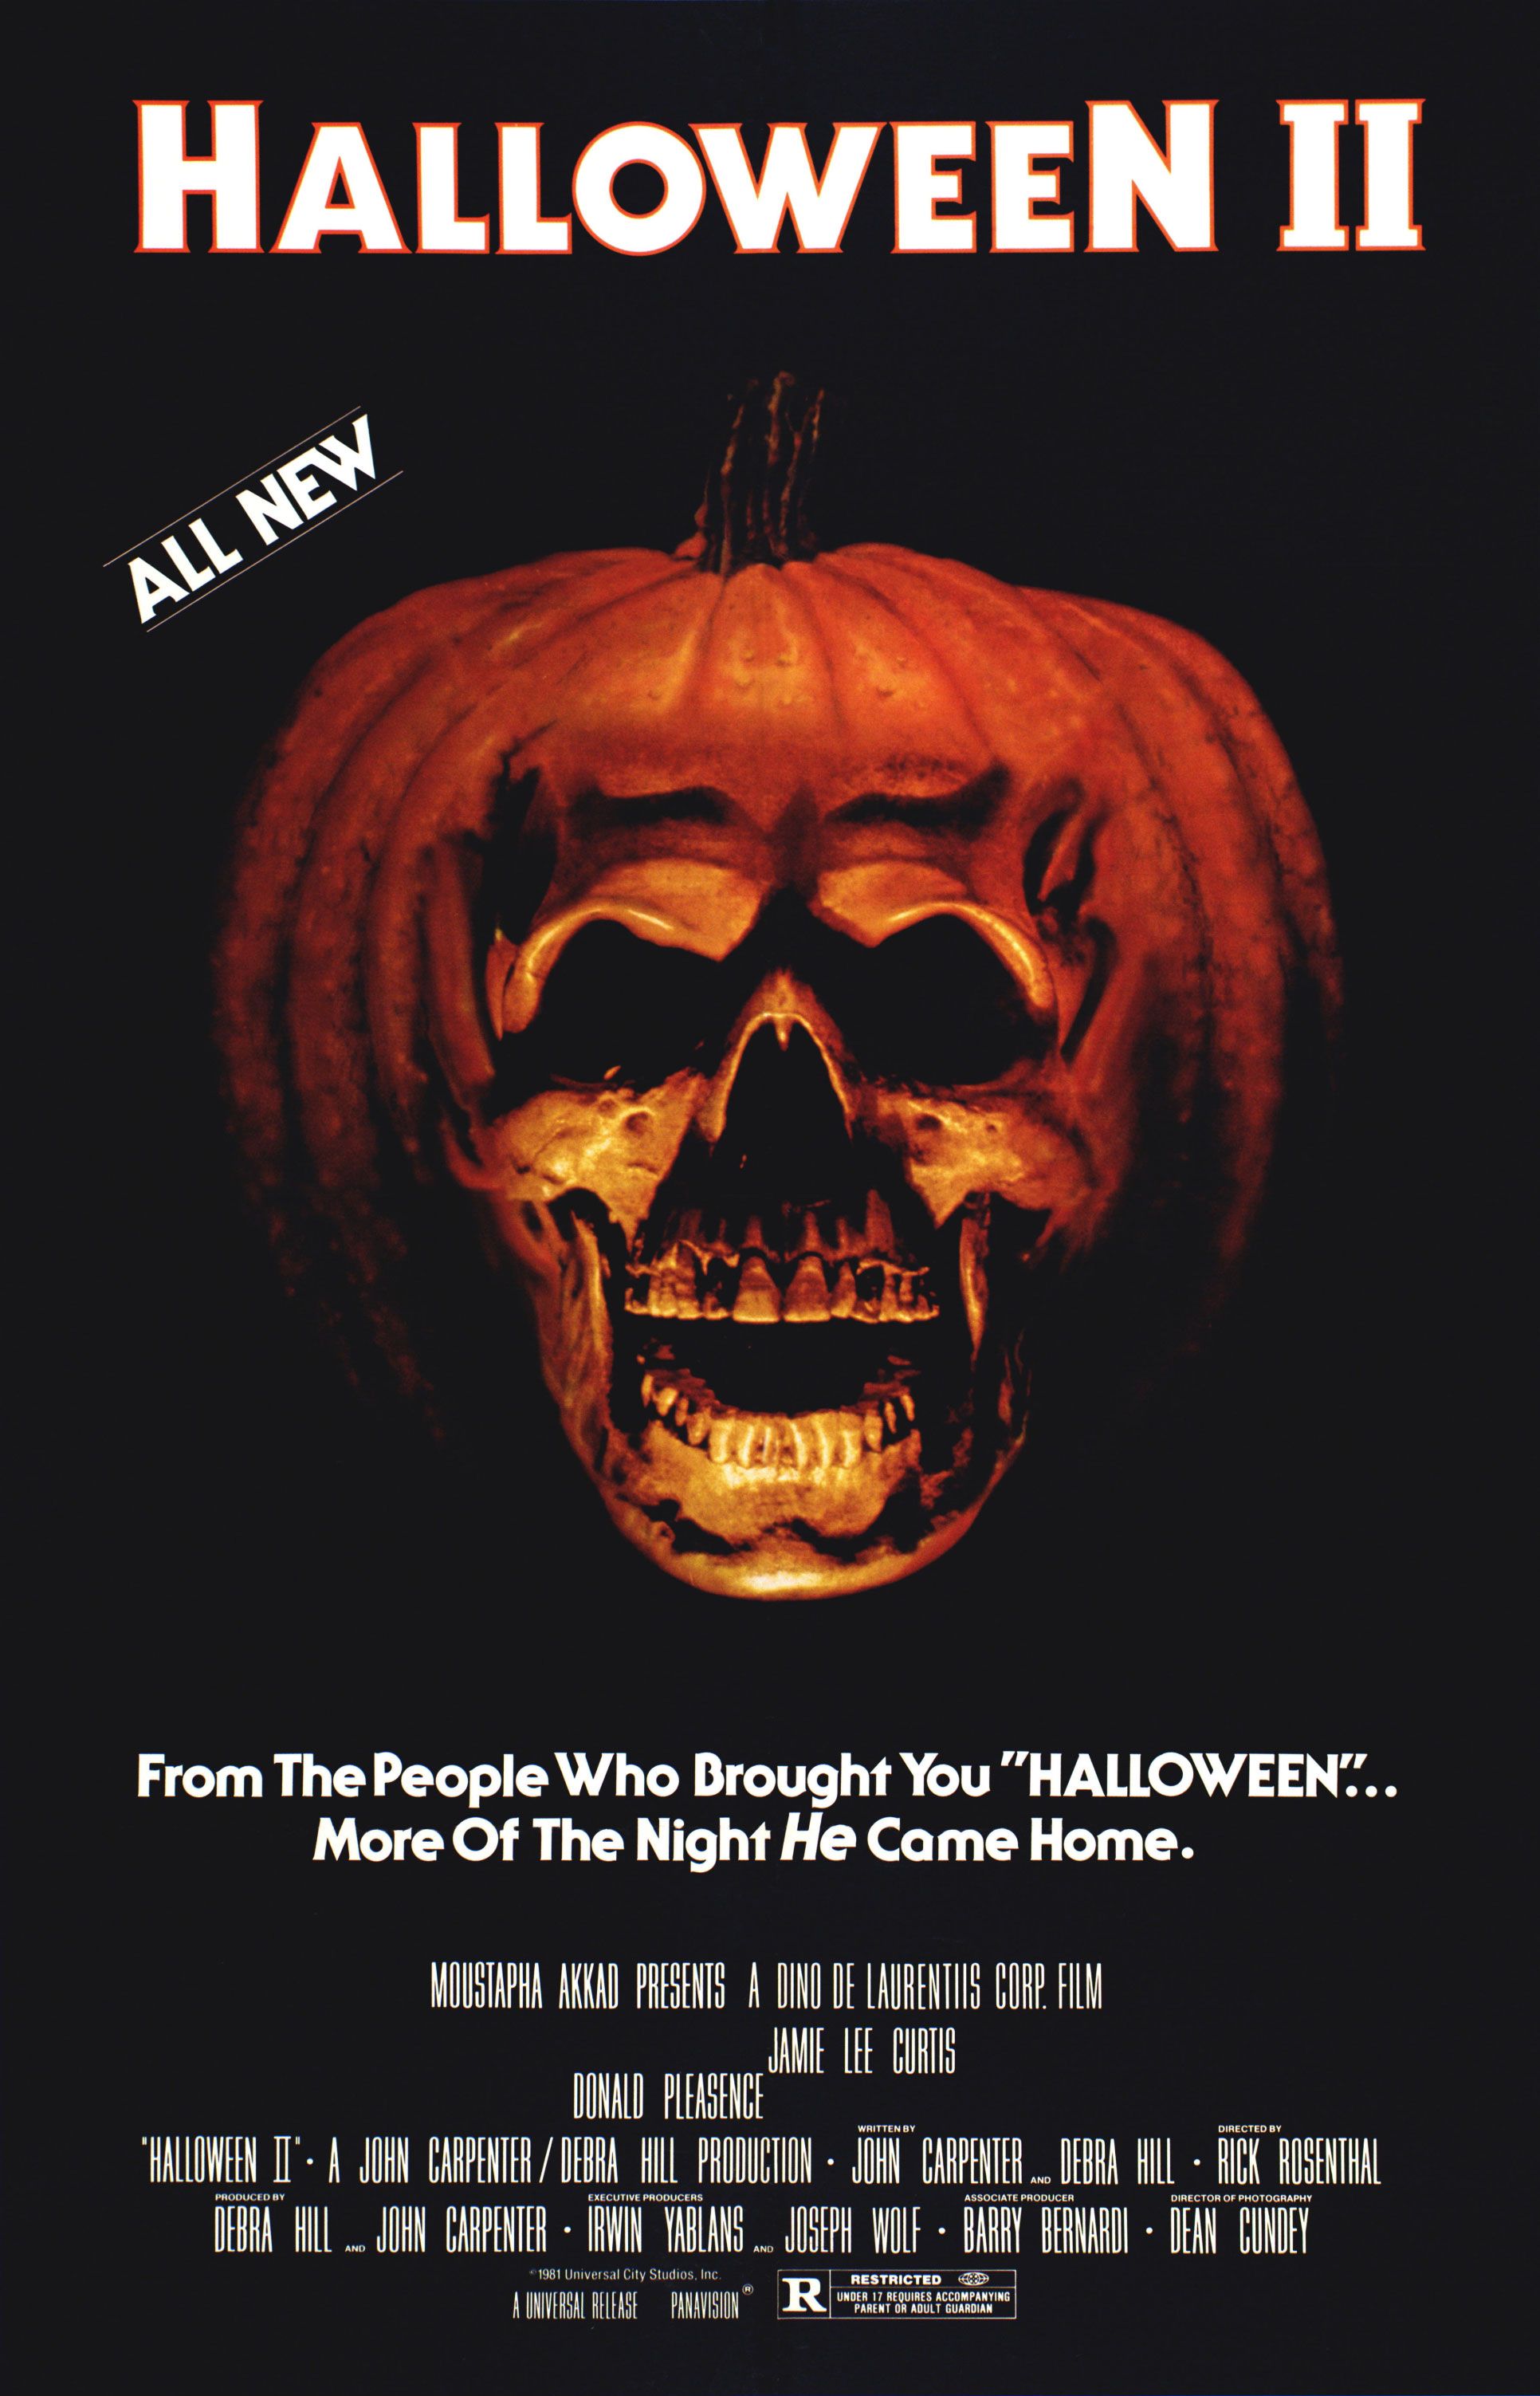 Halloween Ends (2022) - IMDb